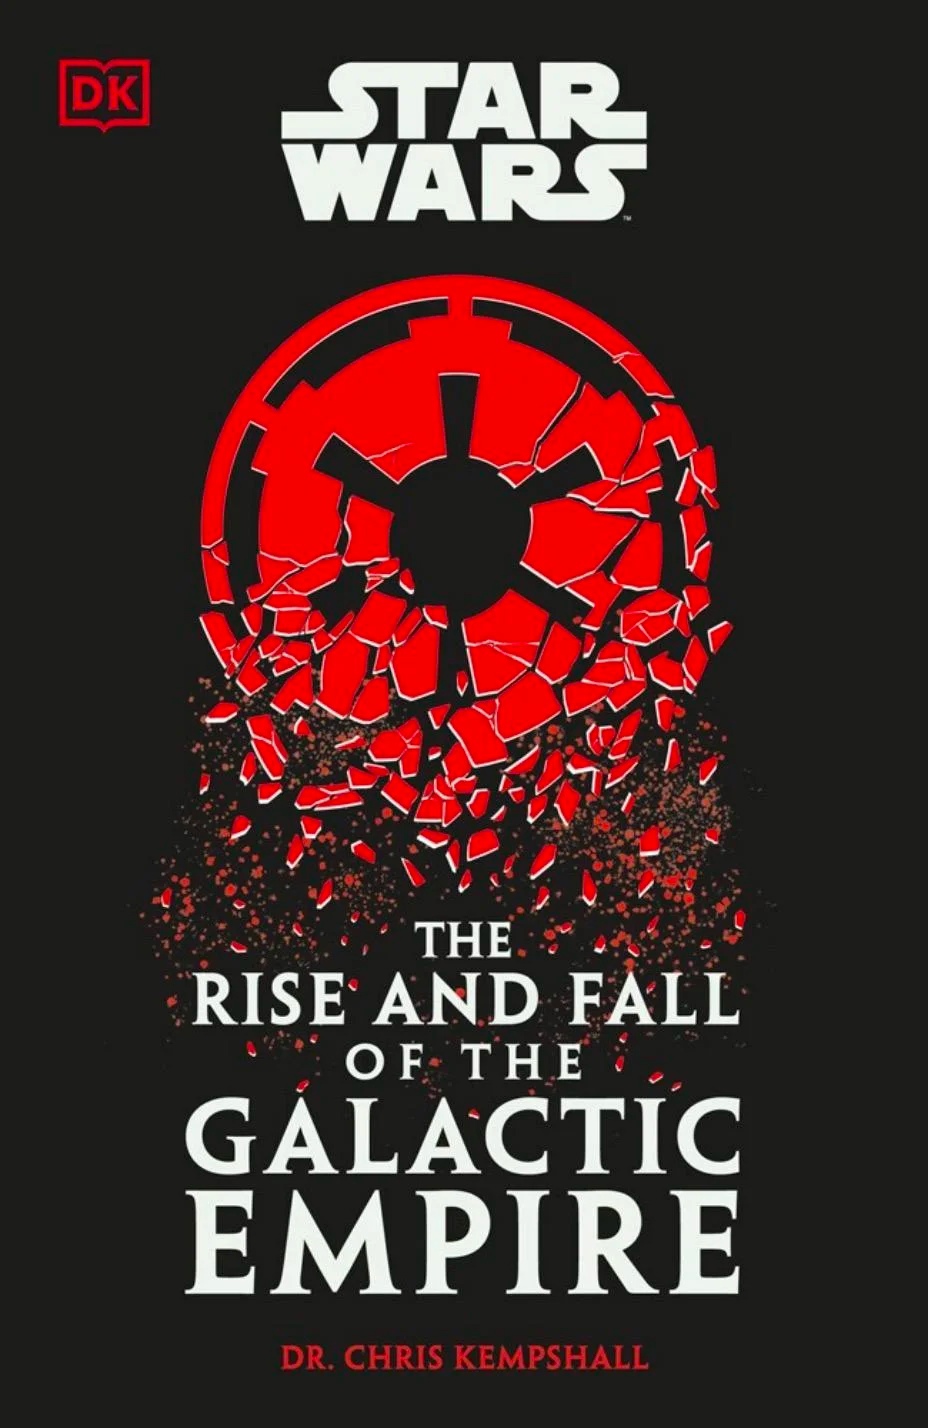 Палпатин возвращается: анонсированы «Звездные войны: Взлет и падение Галактической Империи»